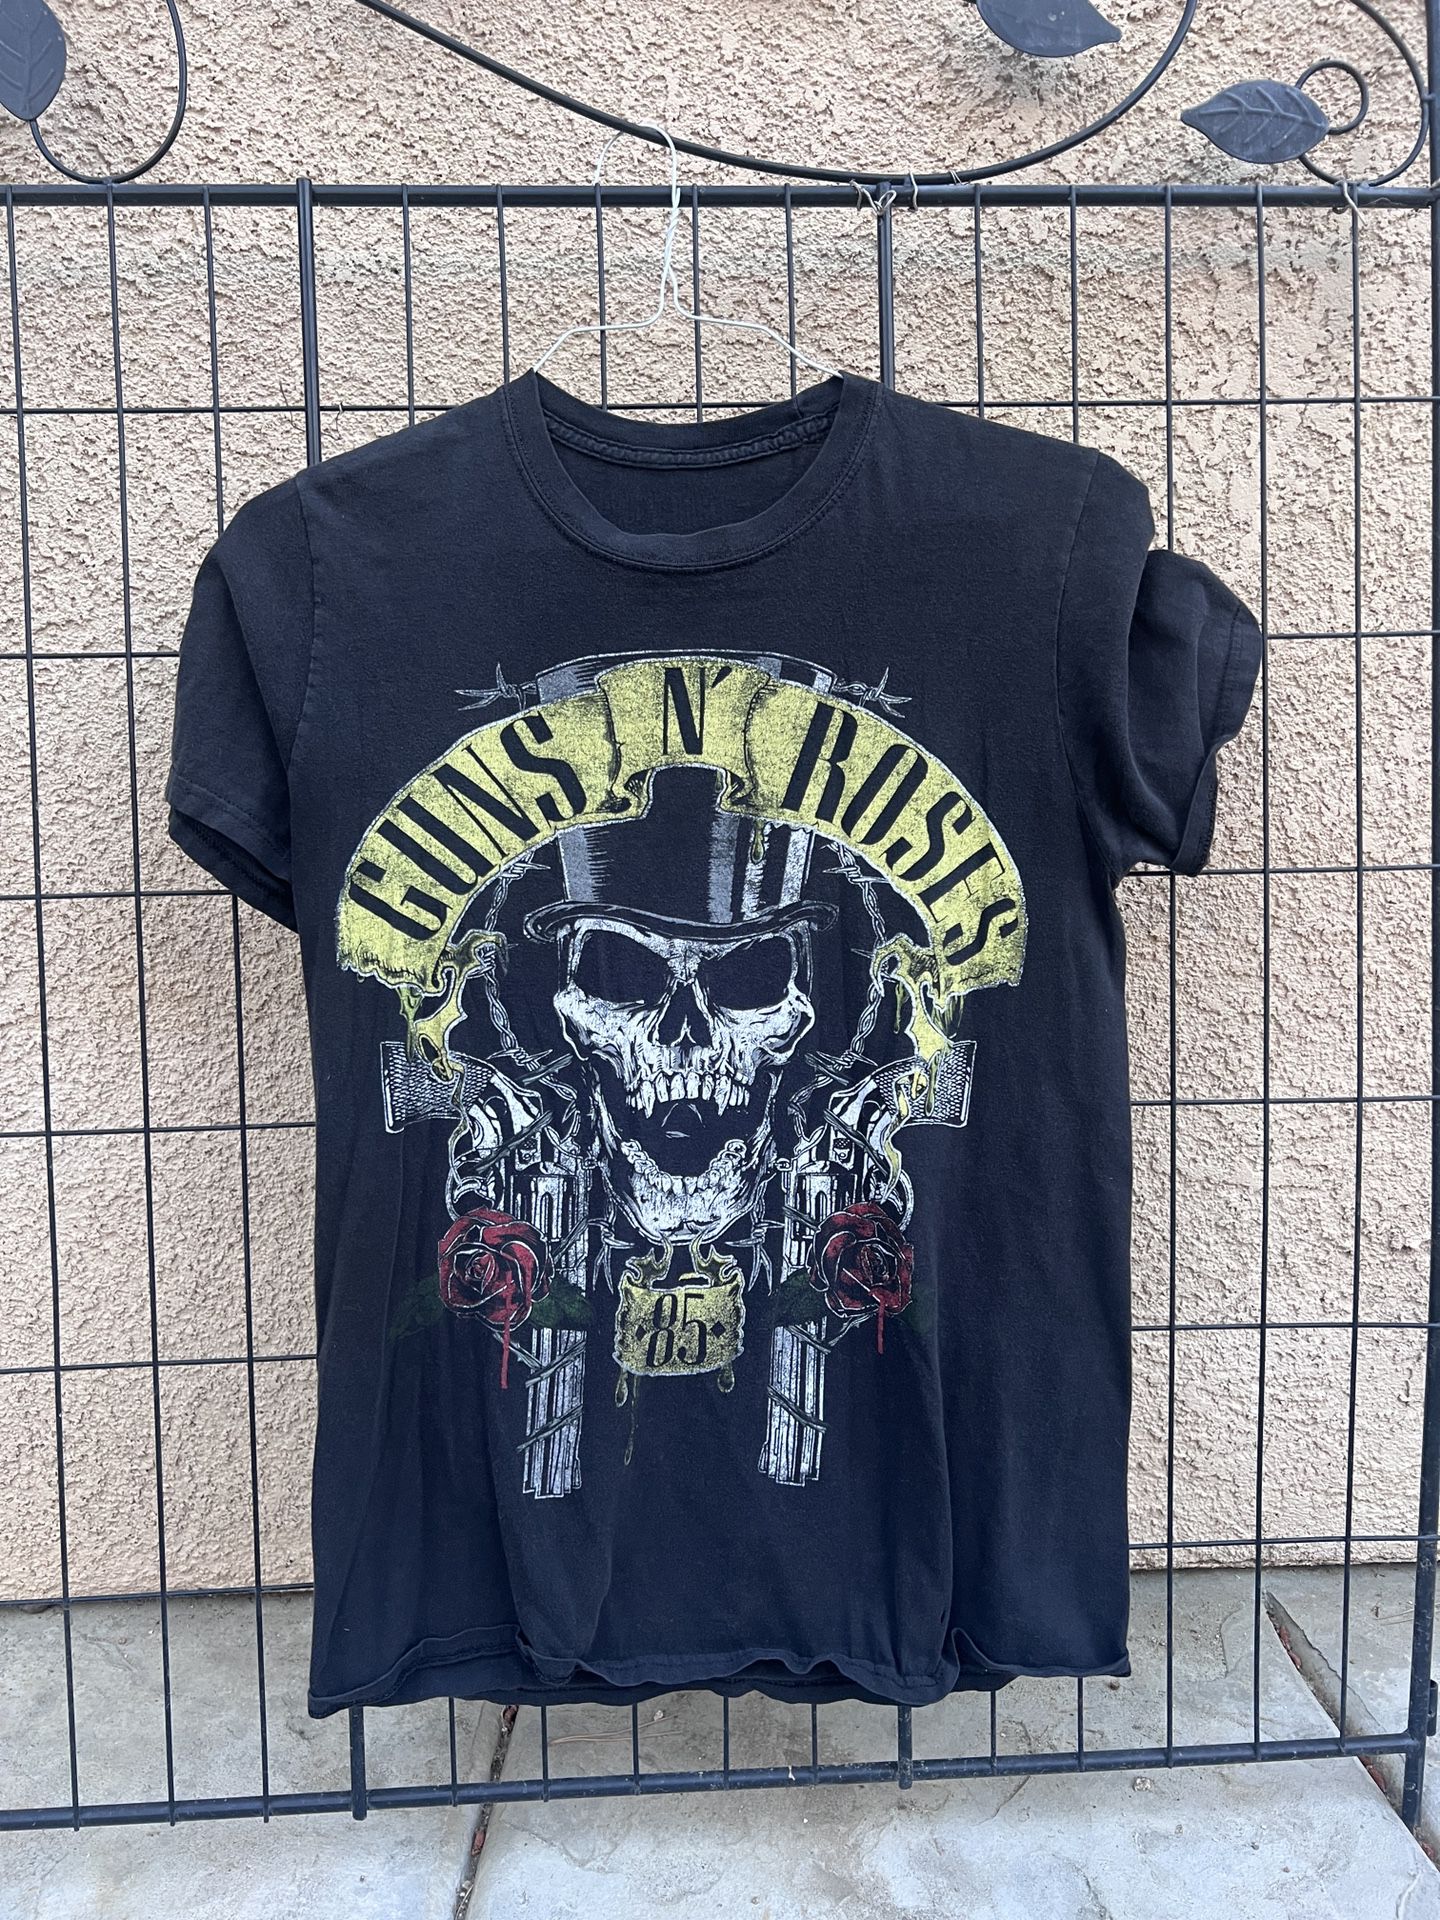 Guns N' Roses Vintage 1985 T-shirt 